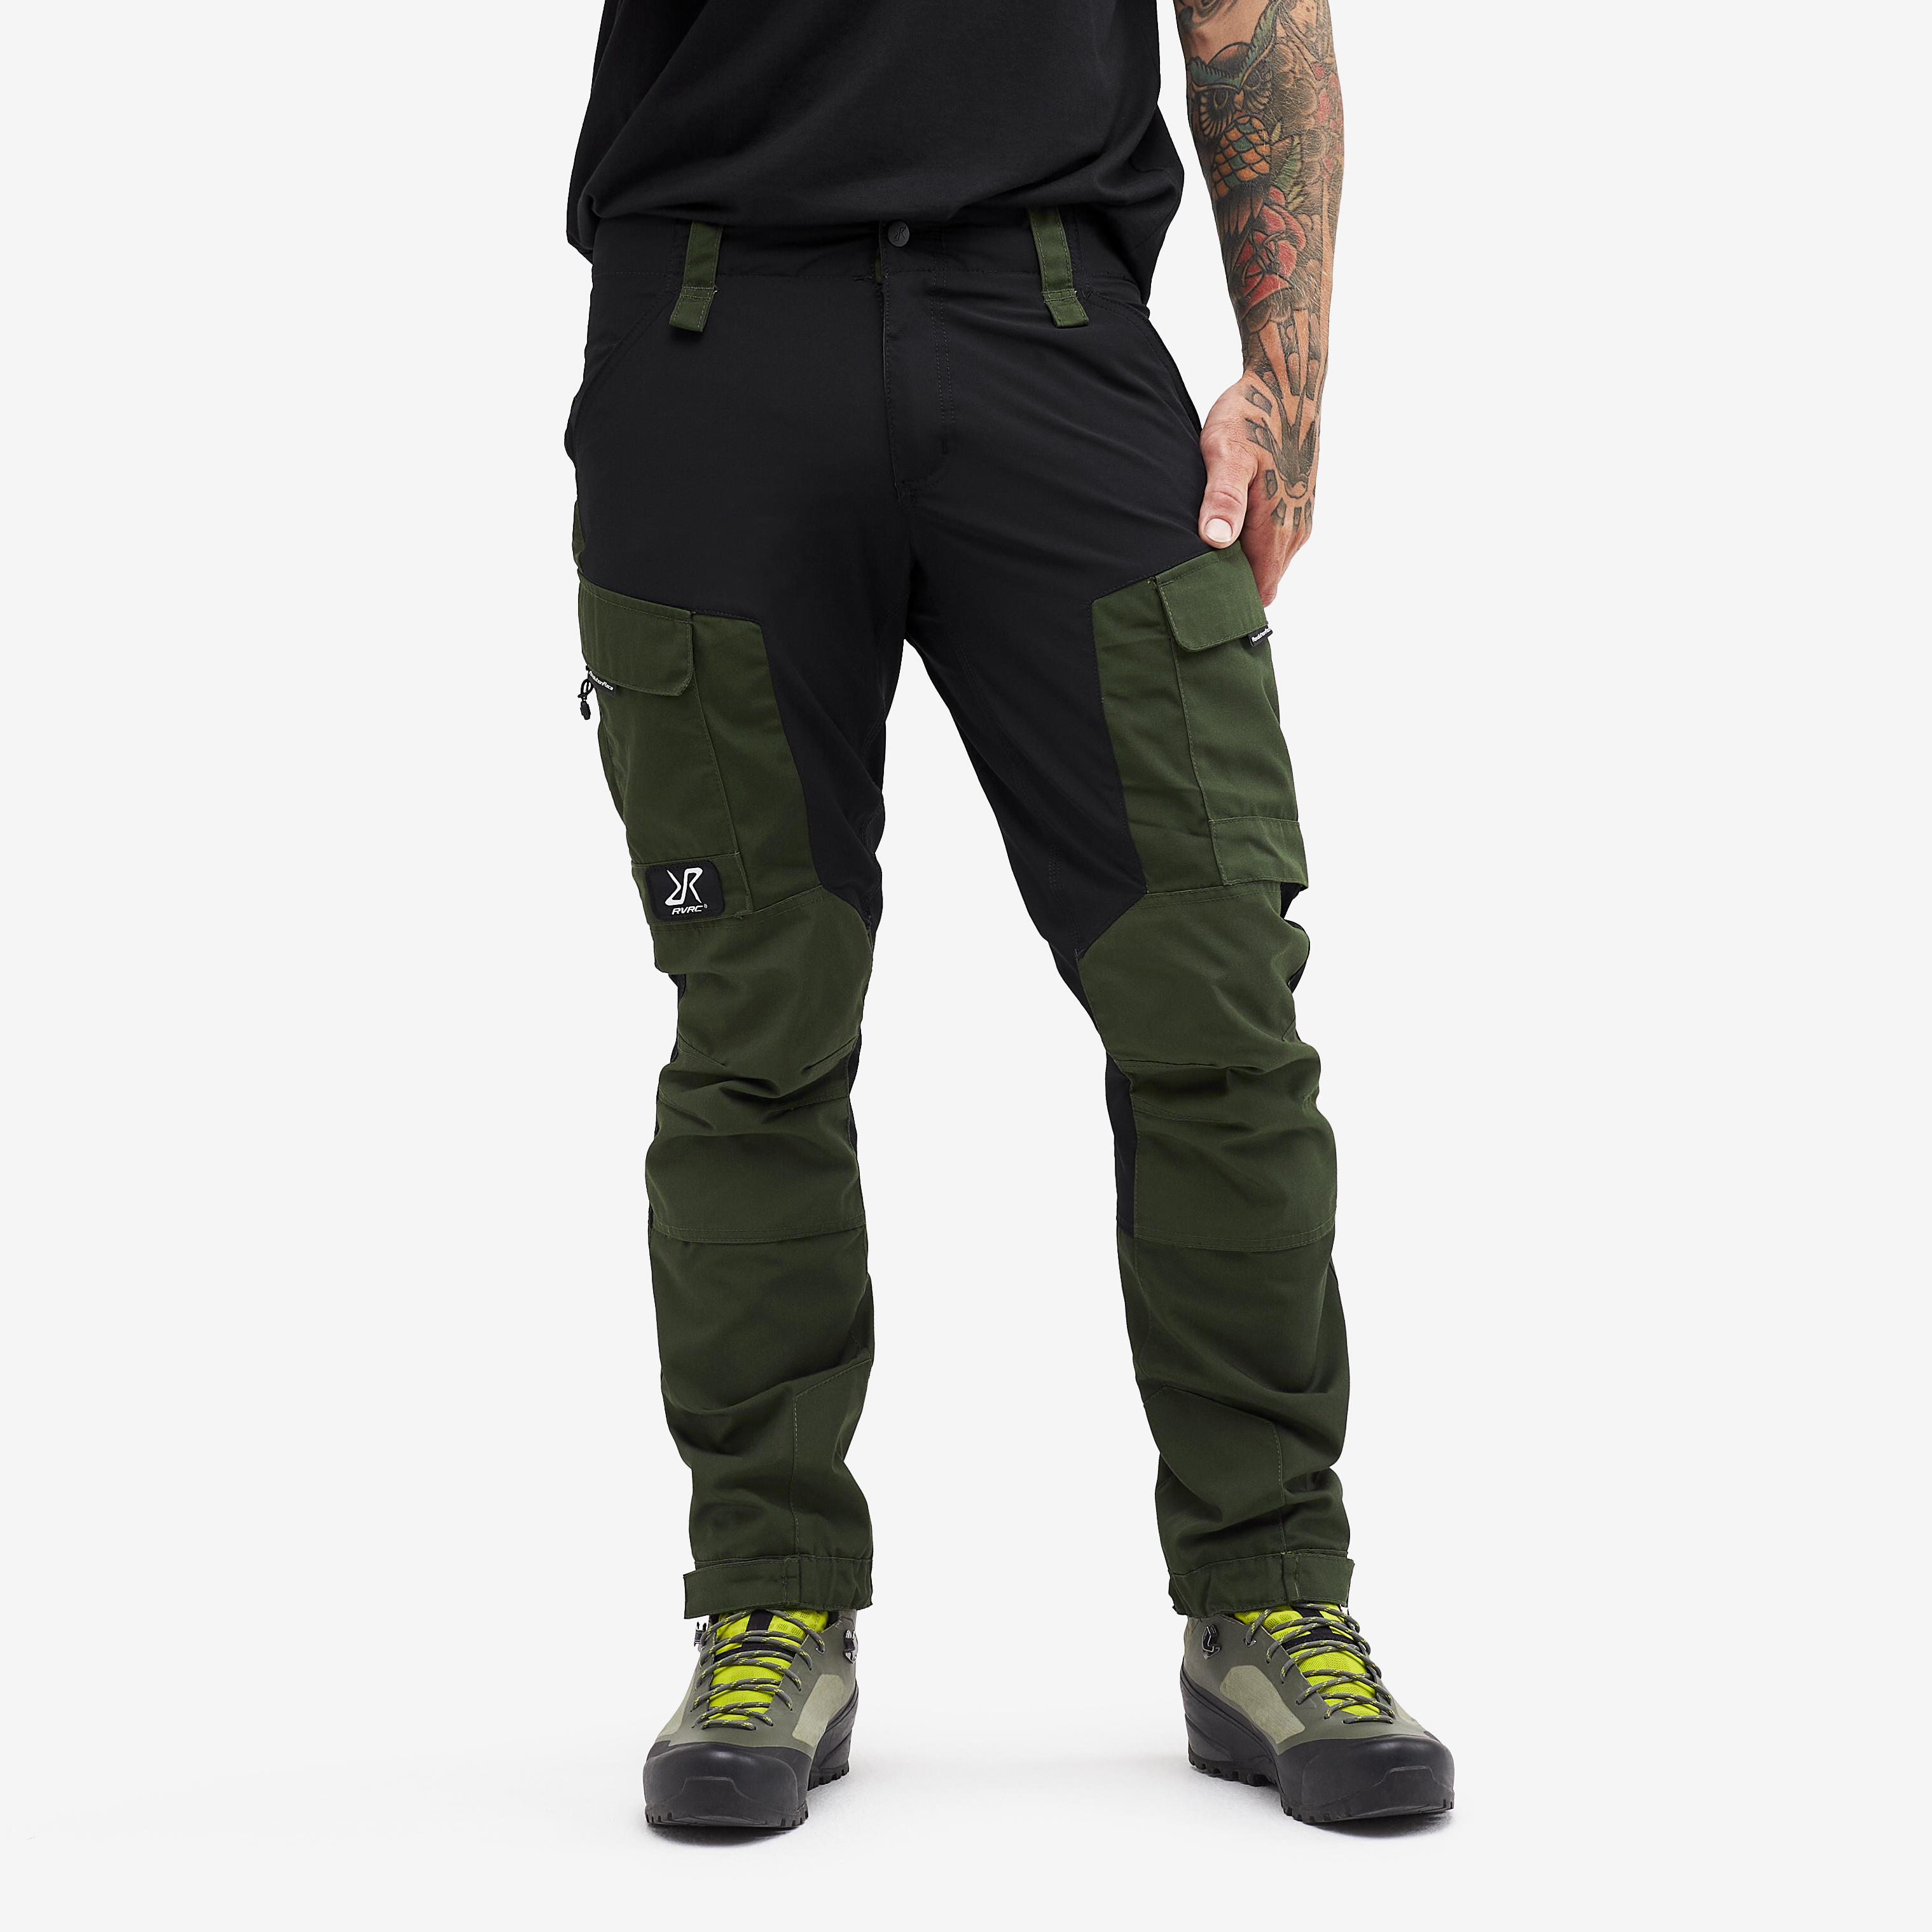 RVRC GP Short outdoor bukser for mænd i grøn